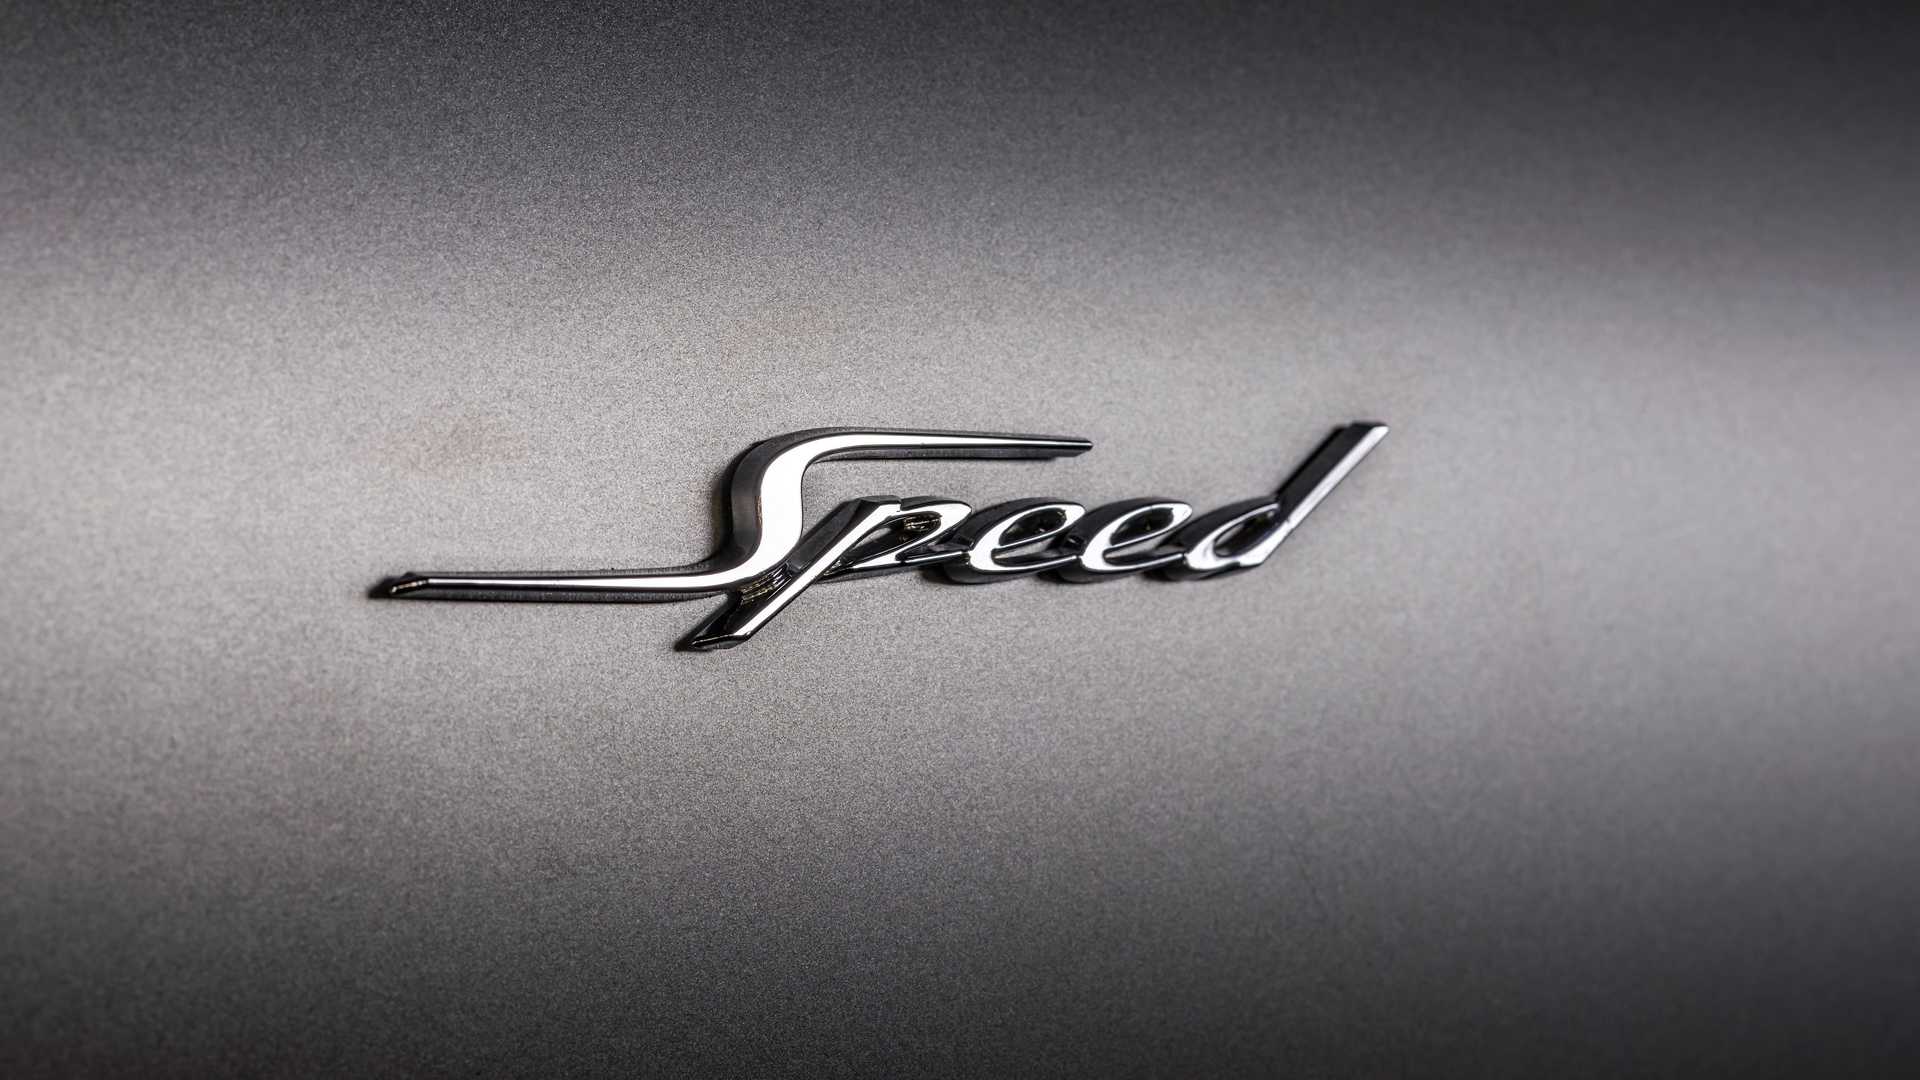 بنتلي كونتيننتال GT سبيد تنطلق رسمياً كأقوى سيارة في تاريخ العلامة 50